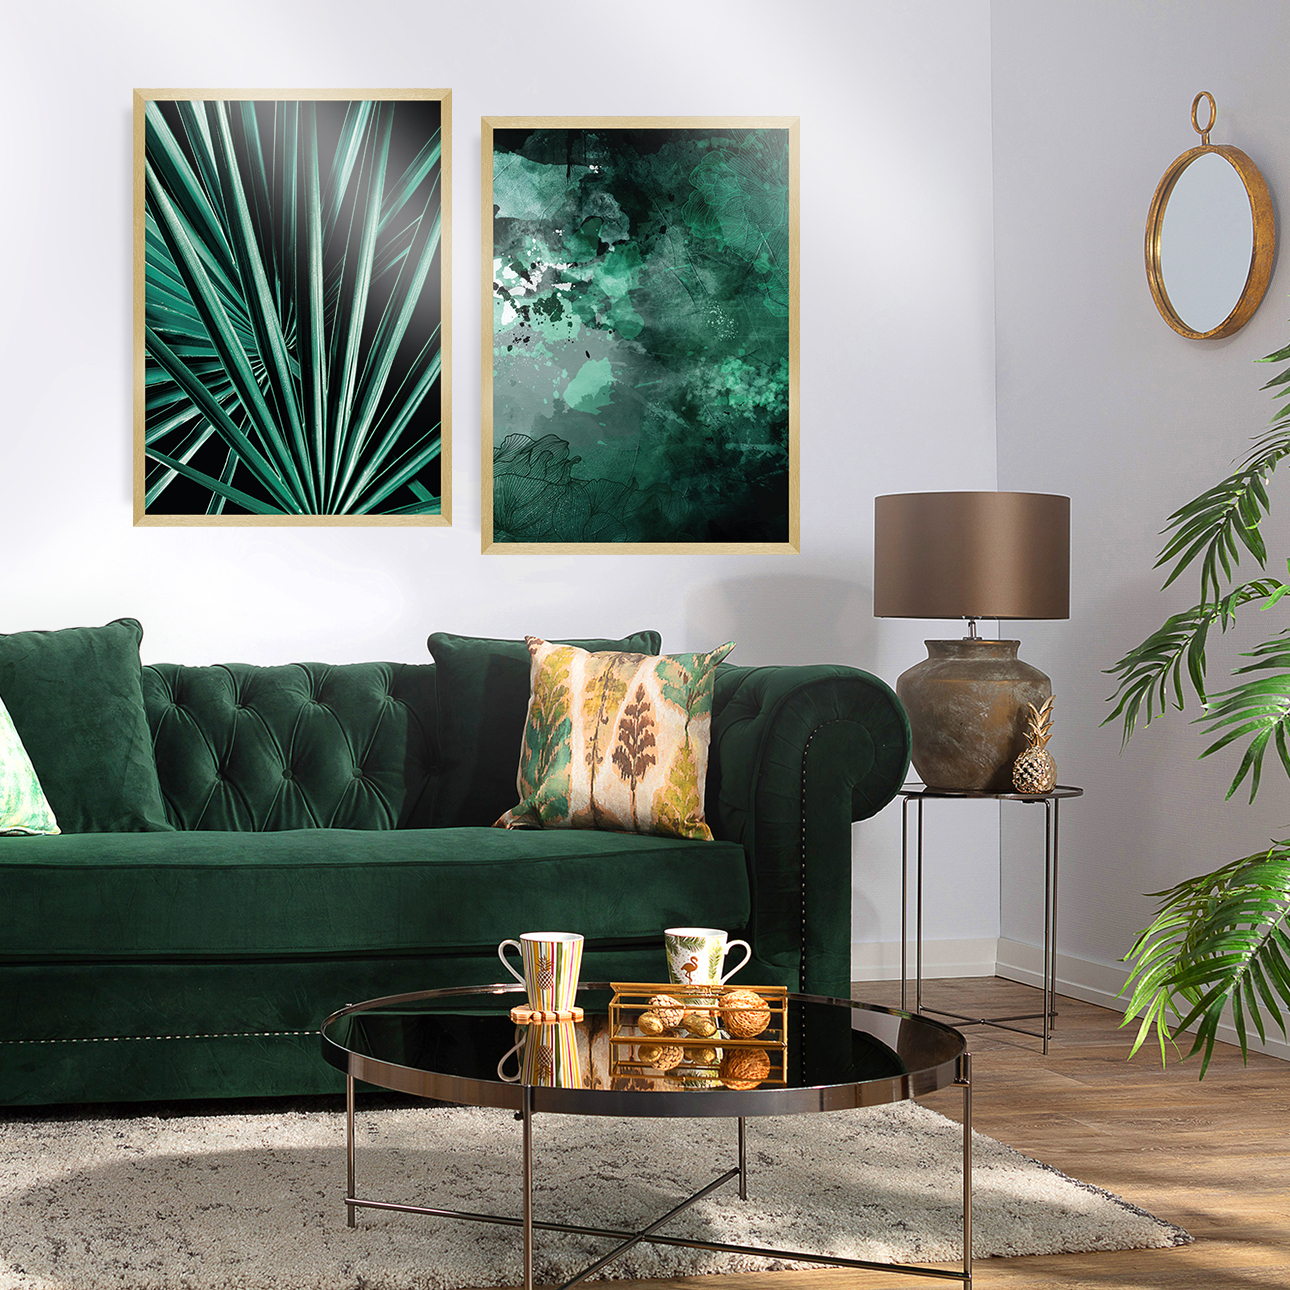 Bilder-Set Greenery 2 Stck., 50 x 70 cm günstig online kaufen